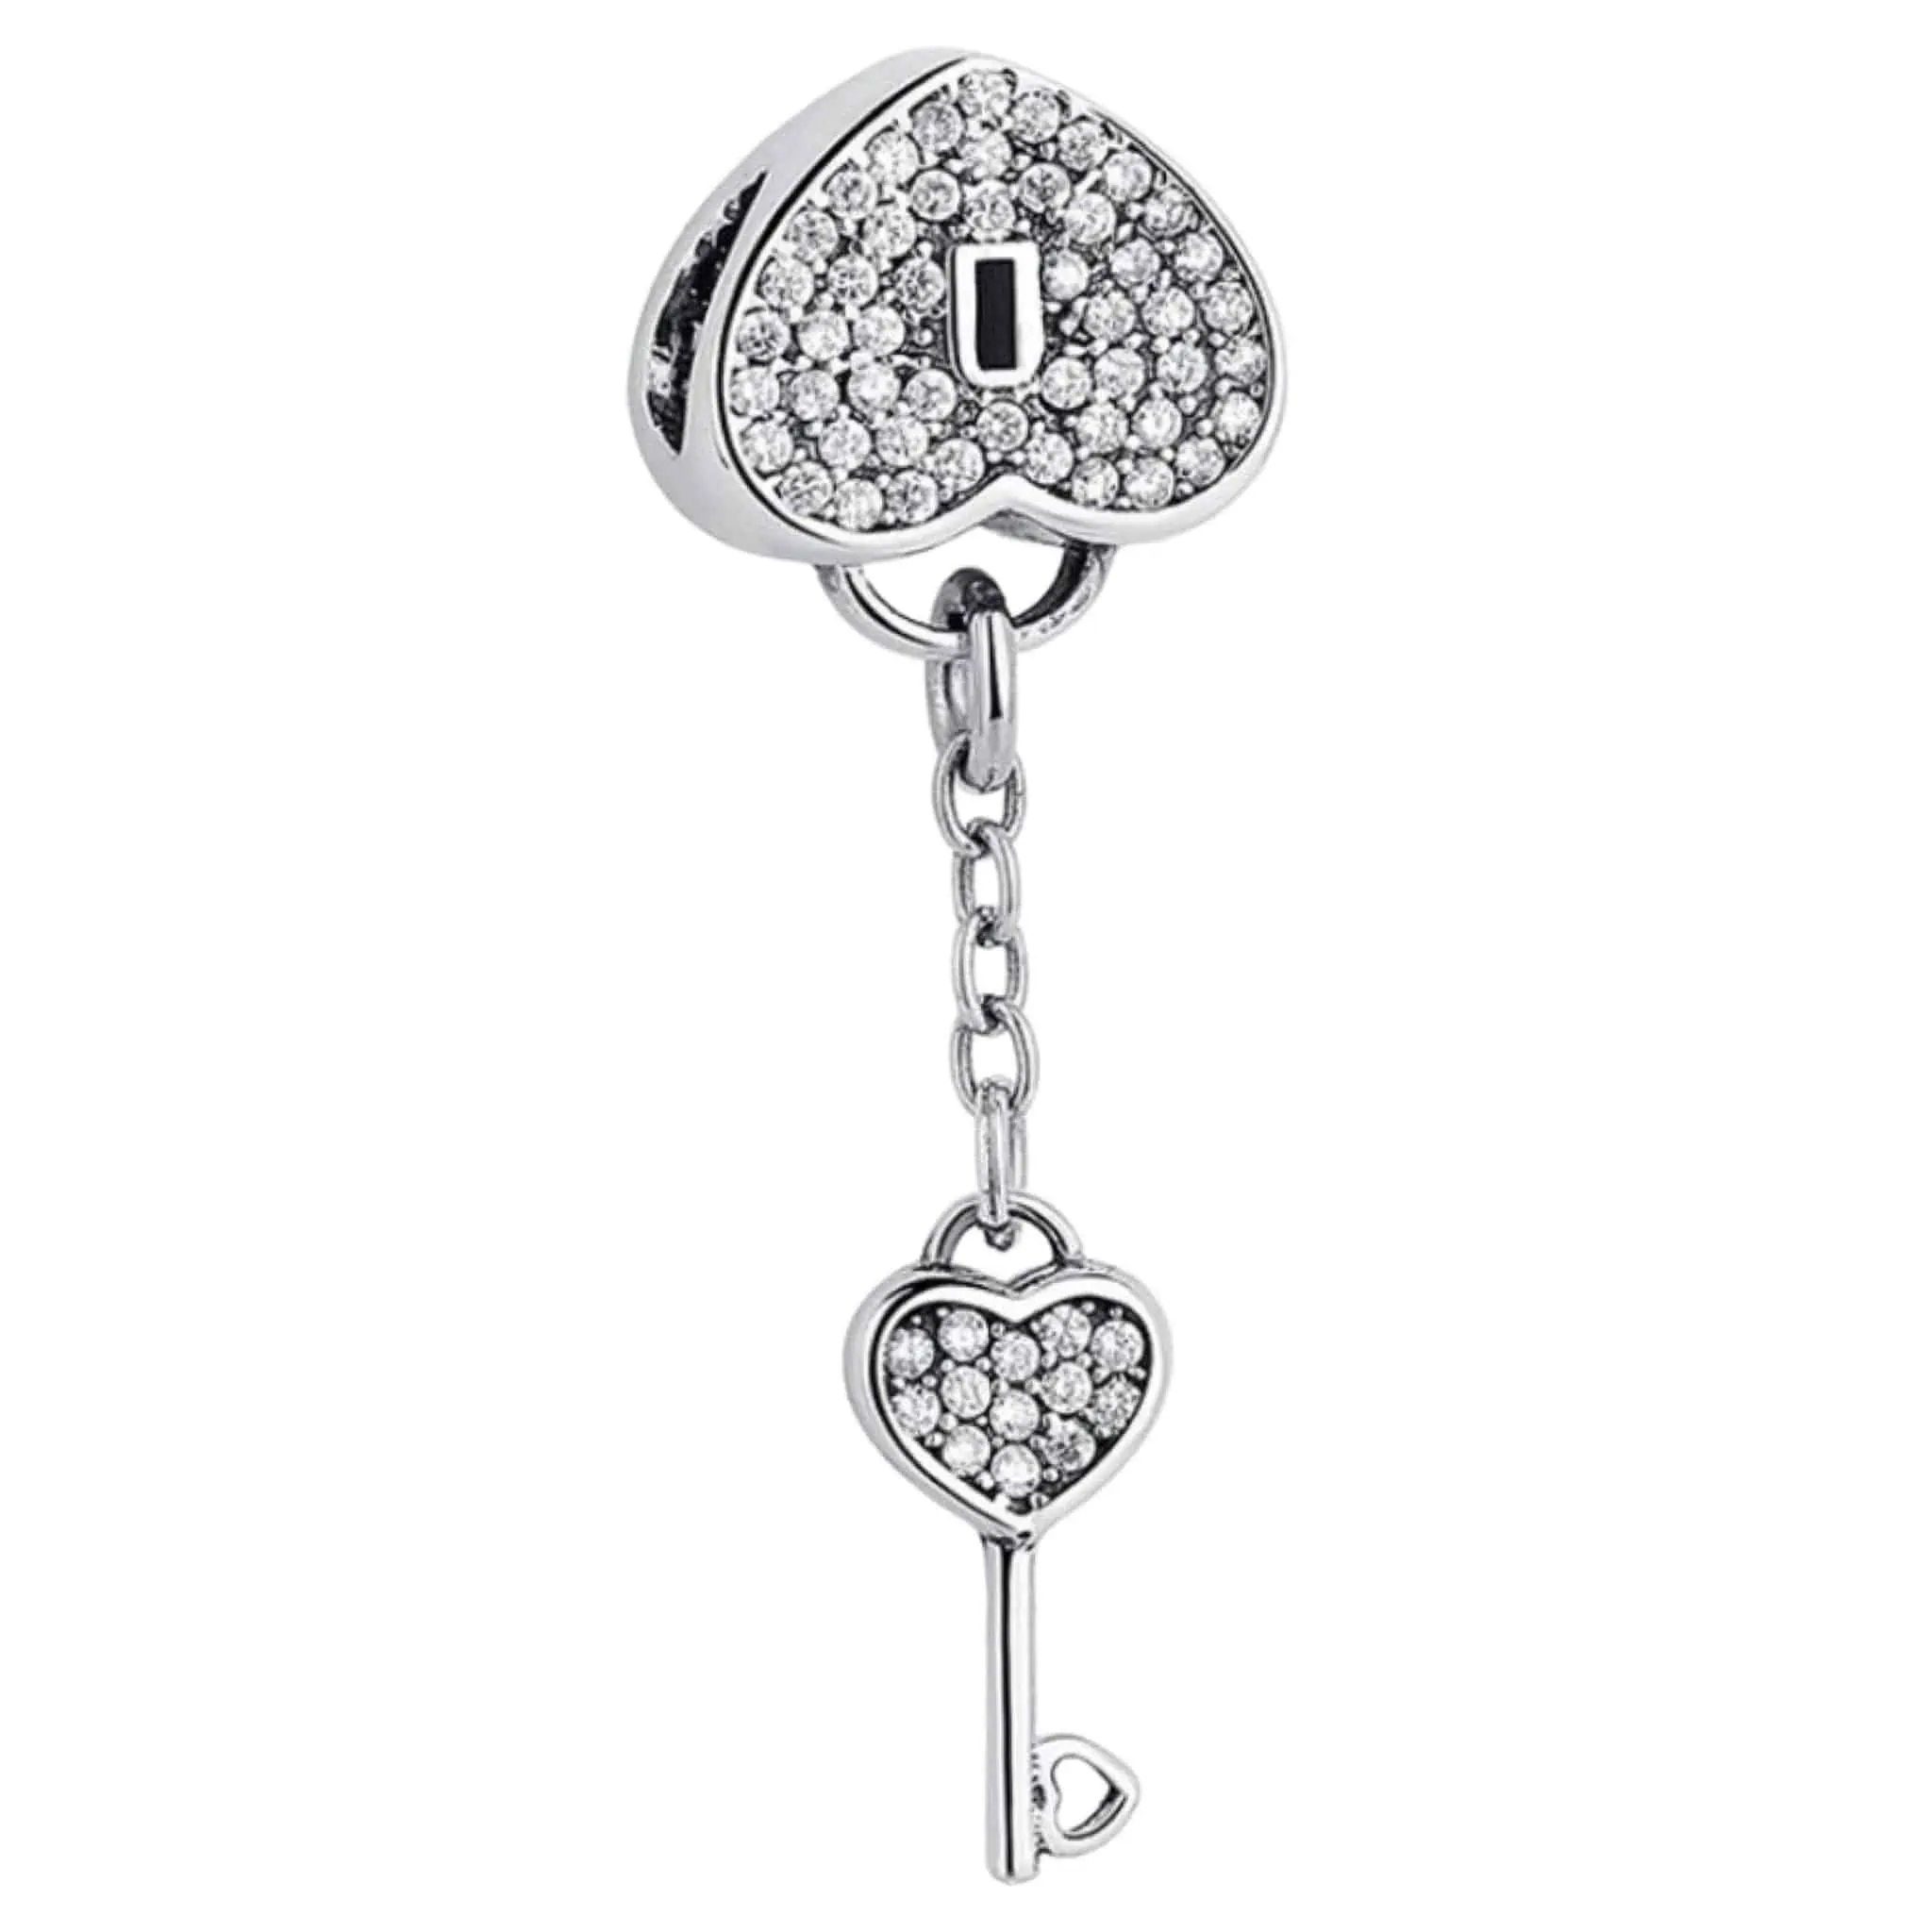 Product Afbeelding Voor en Achteraanzicht van onze prachtige bead uit de hart en liefde collectie. Deze Hart slot met sleutel is gemaakt van 925 sterling zilver en helemaal ingelegd met zirkonia. De sleutel hangt aan een ketting vast aan het hartje.